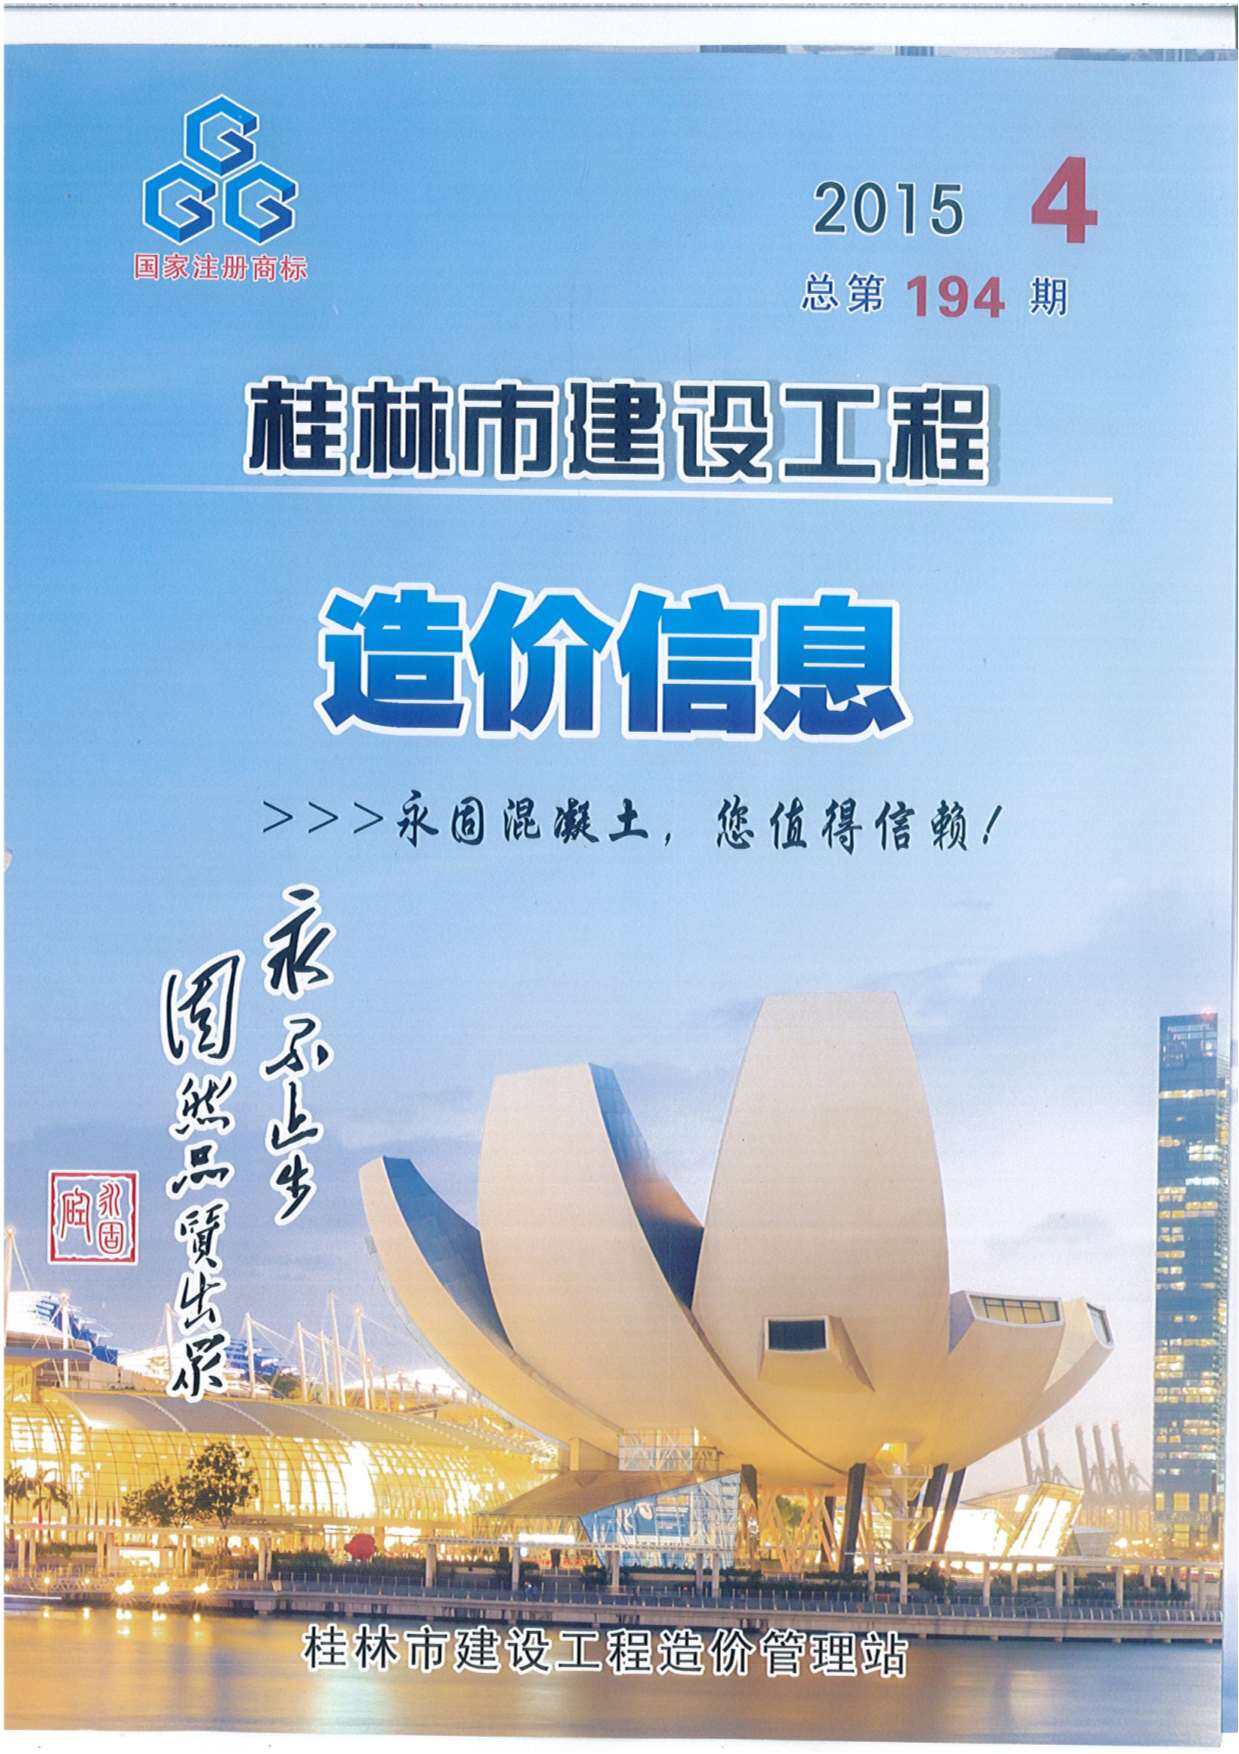 桂林市2015年4月工程造价信息期刊